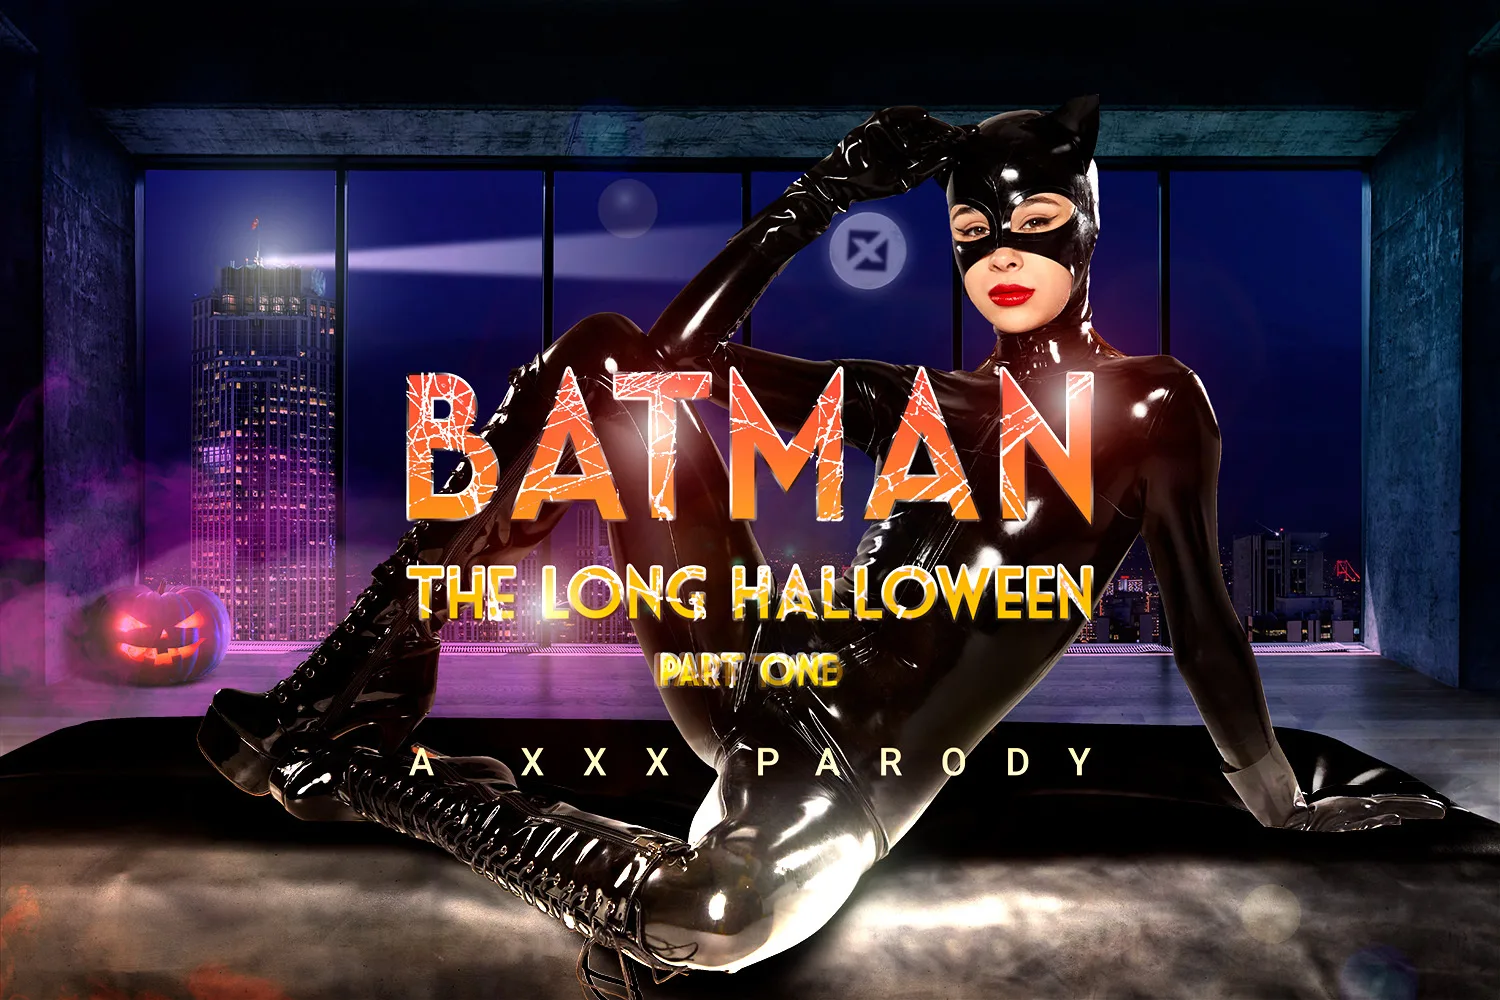 [2022-10-20] Batman: The Long Halloween Part One A XXX Parody - VRCosplayX